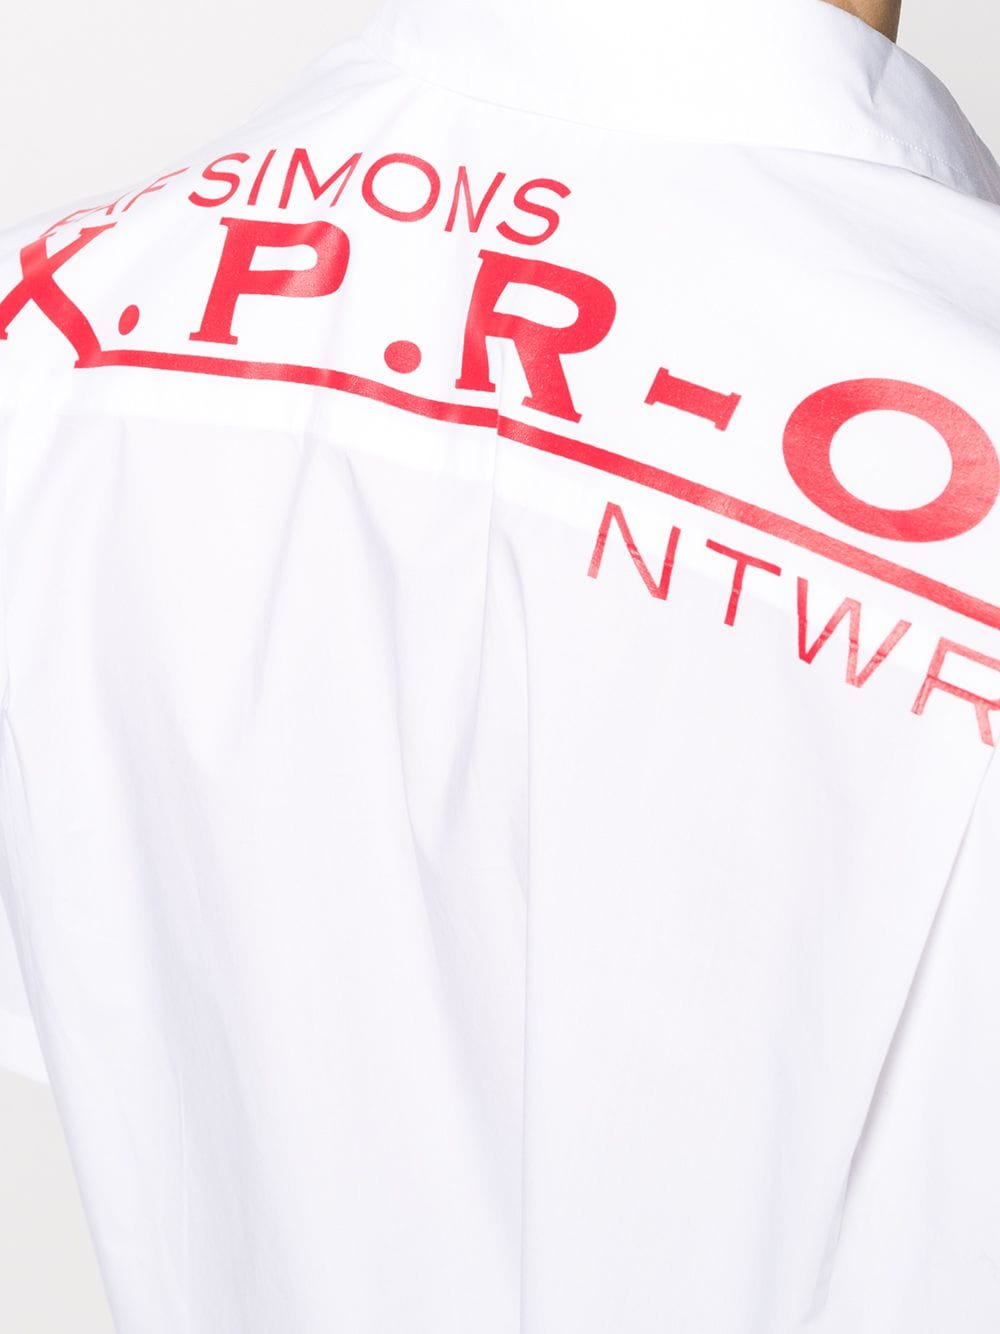 фото Raf simons рубашка с логотипом